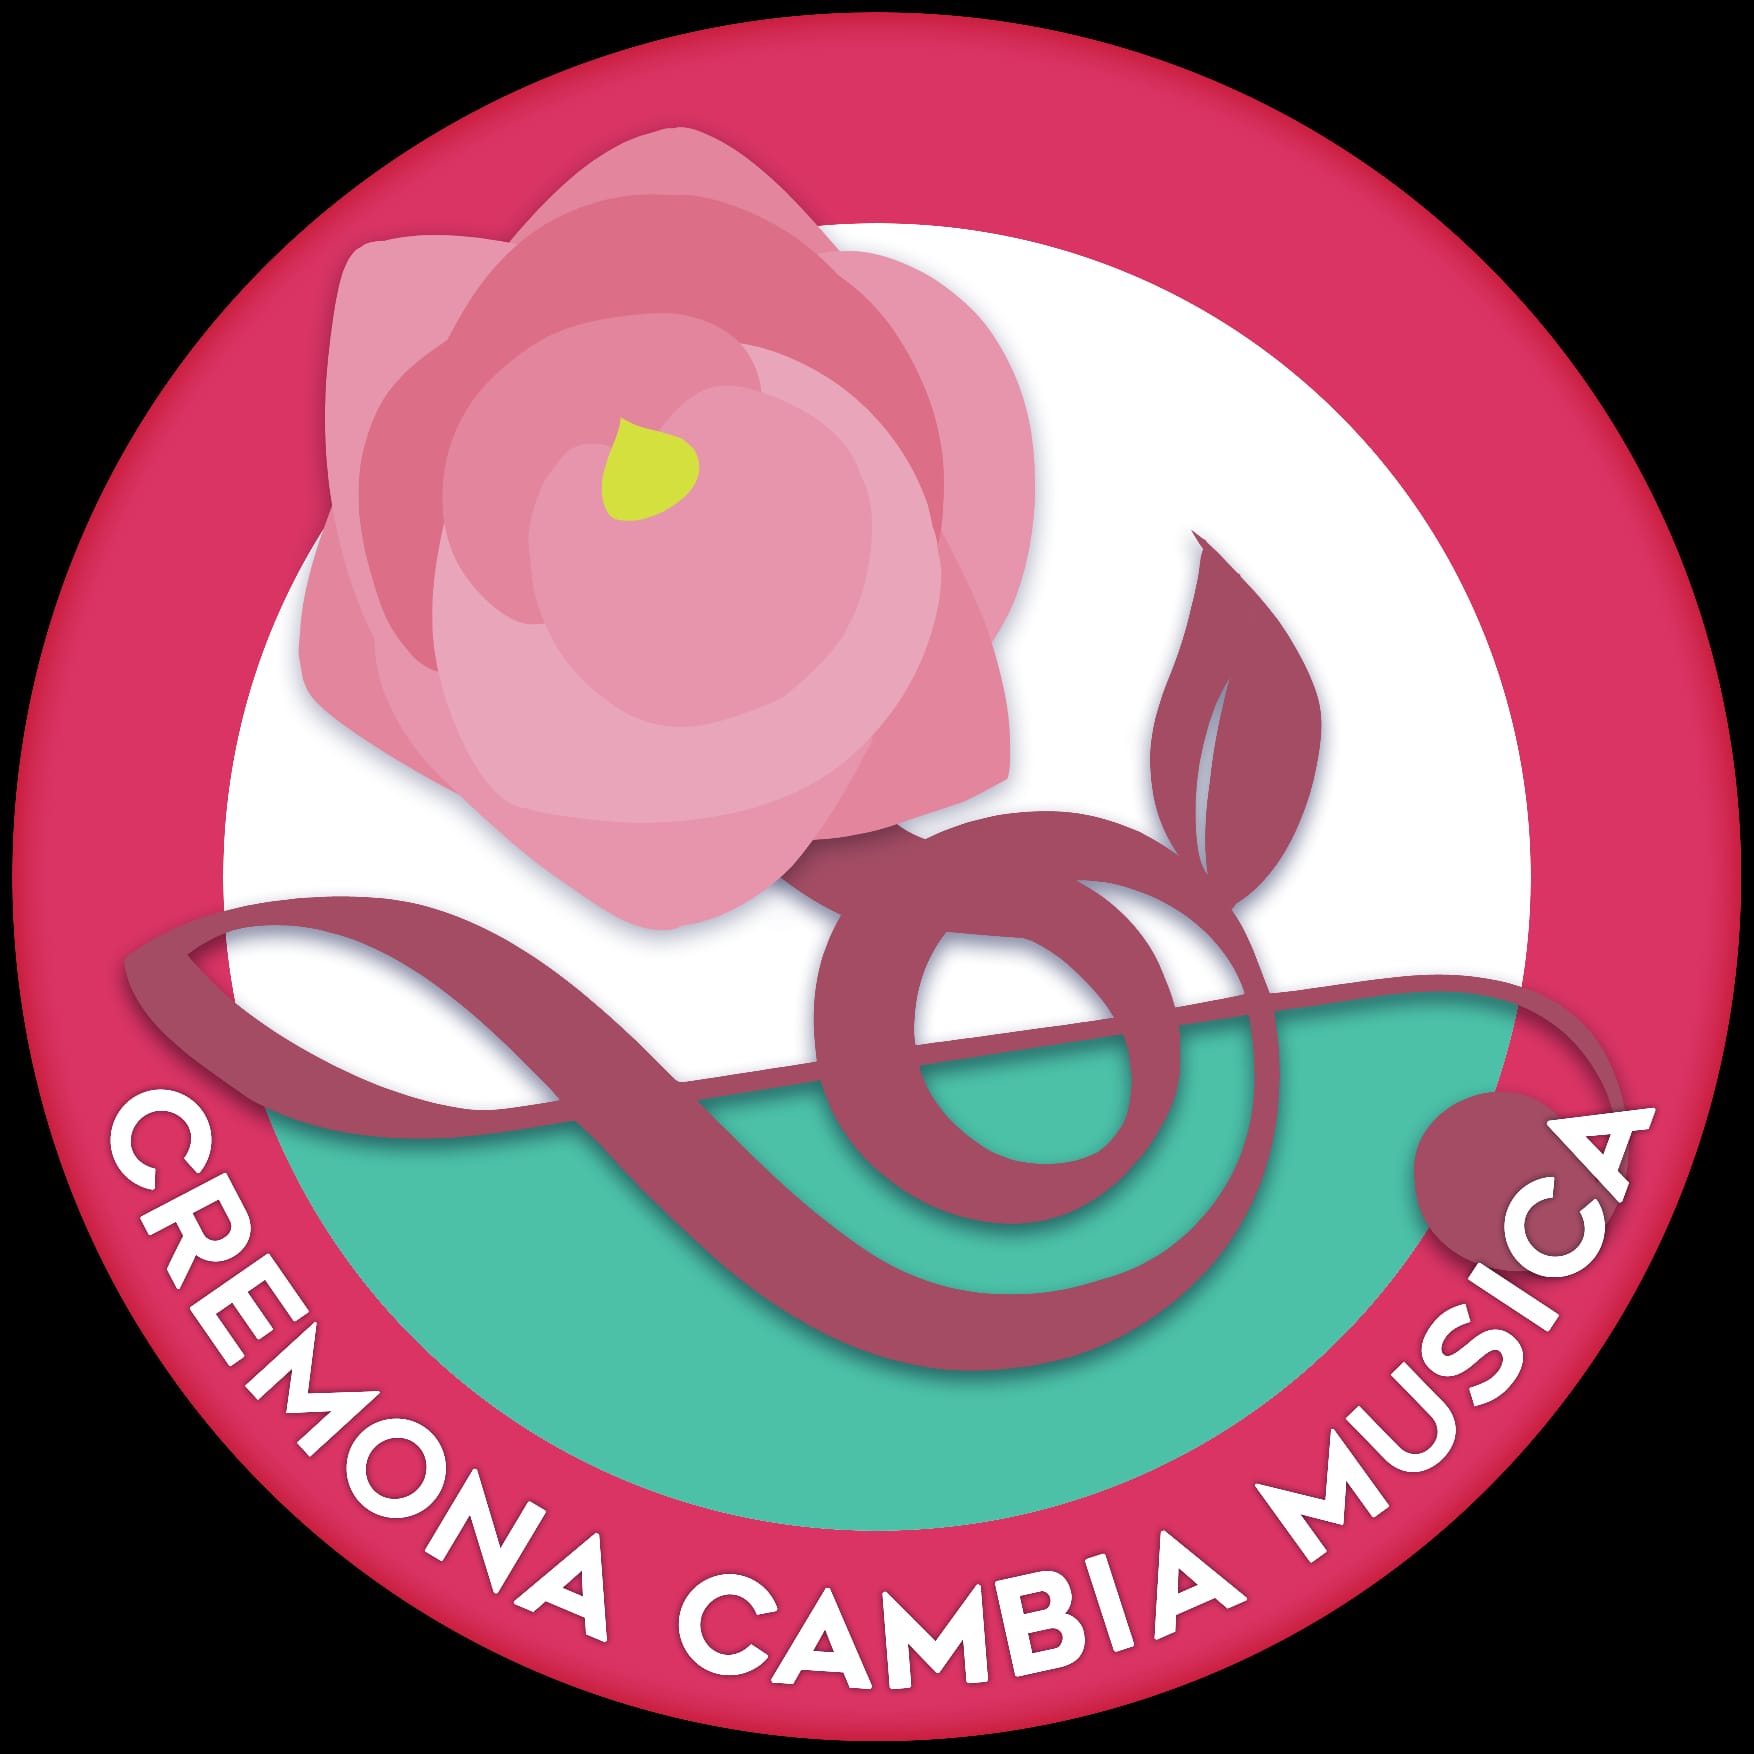 Cremona Cambia Musica